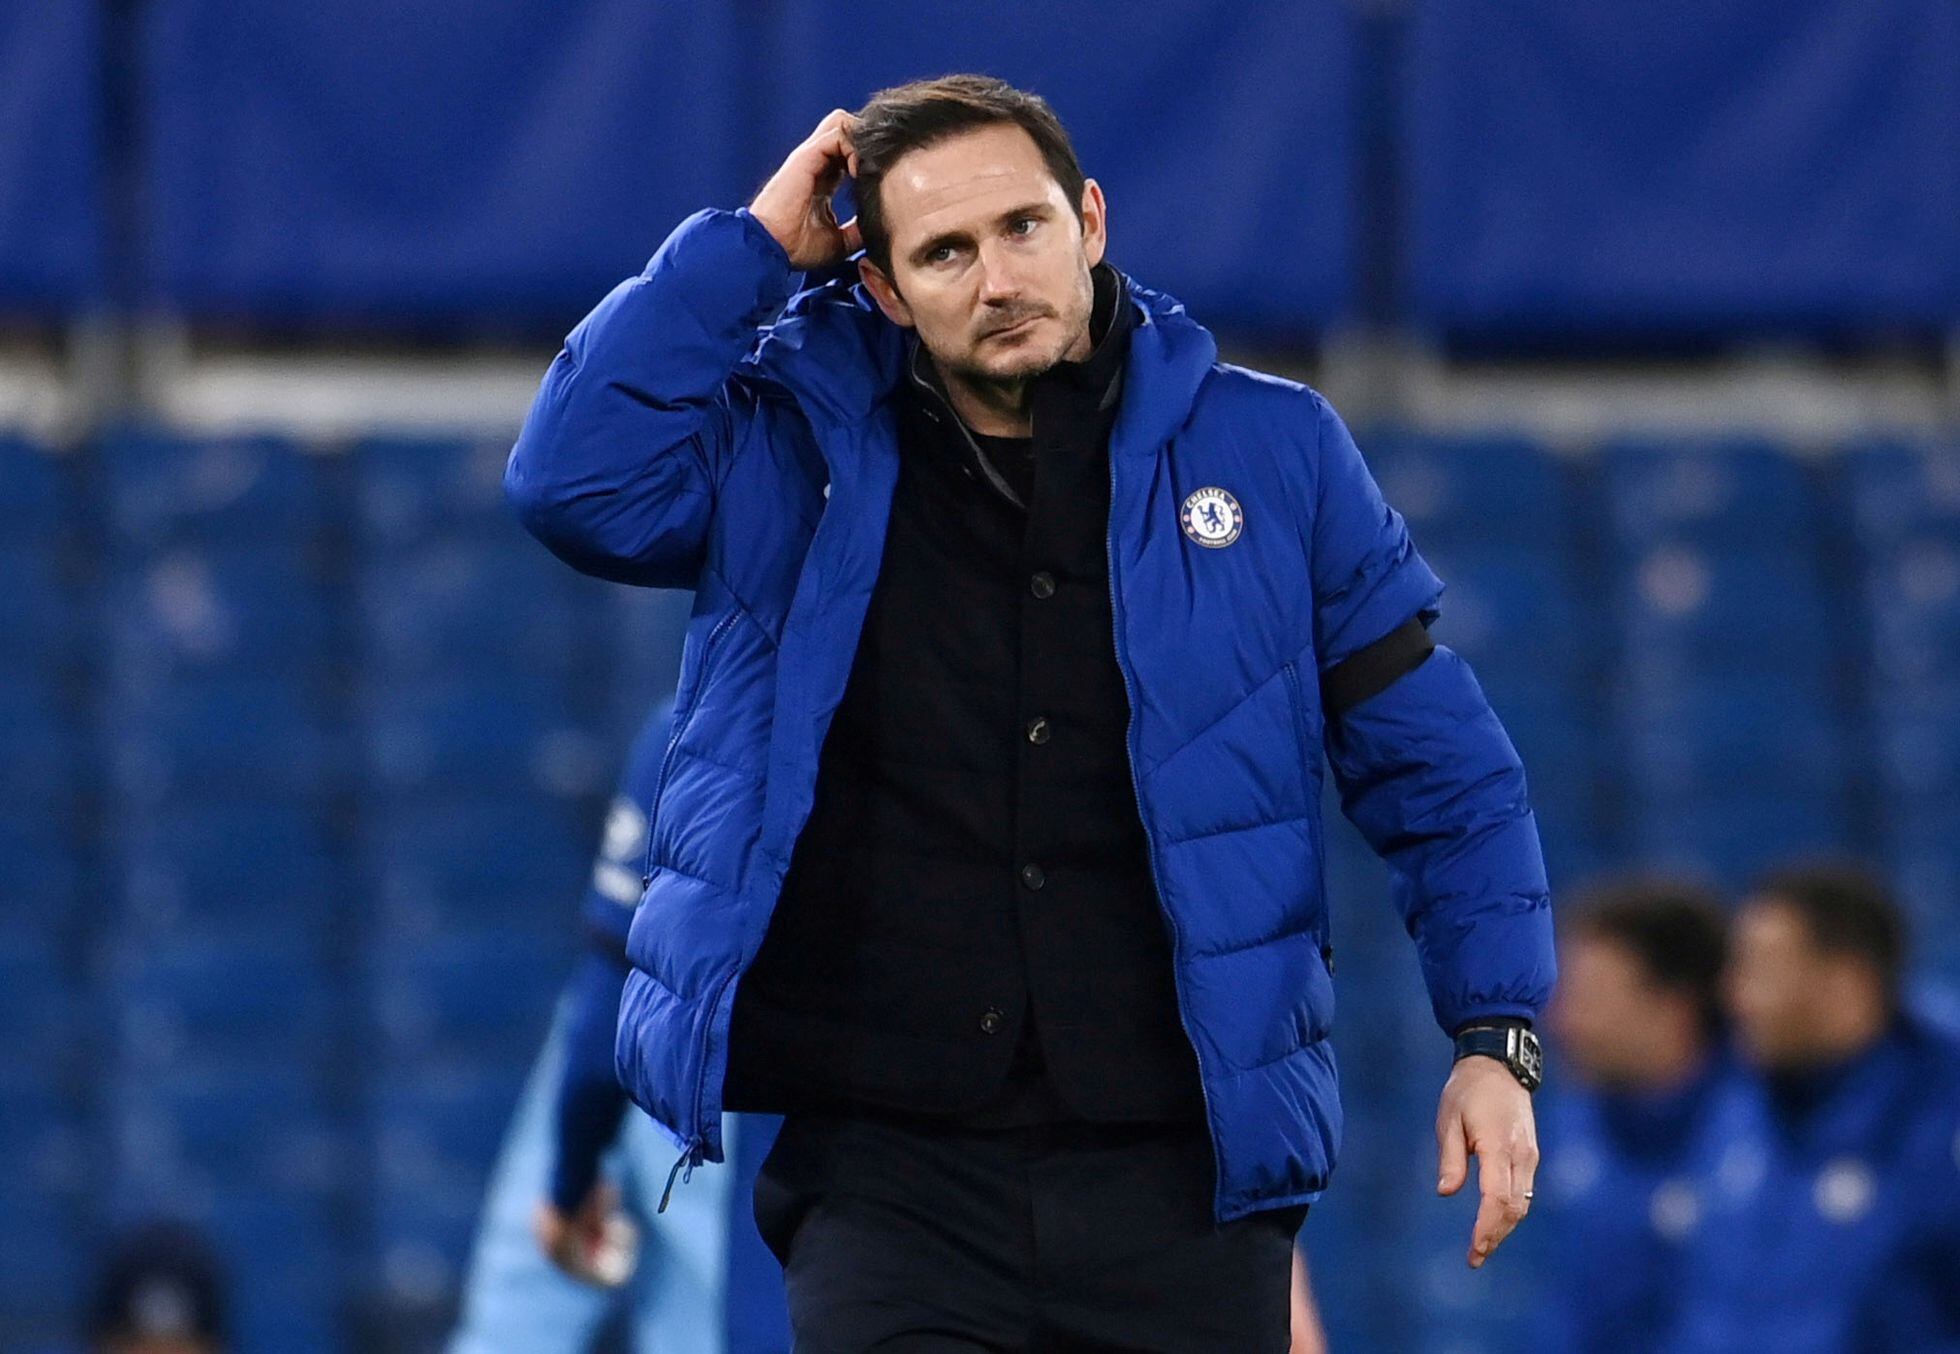 El Chelsea despide a Lampard | Deportes | EL PAÍS